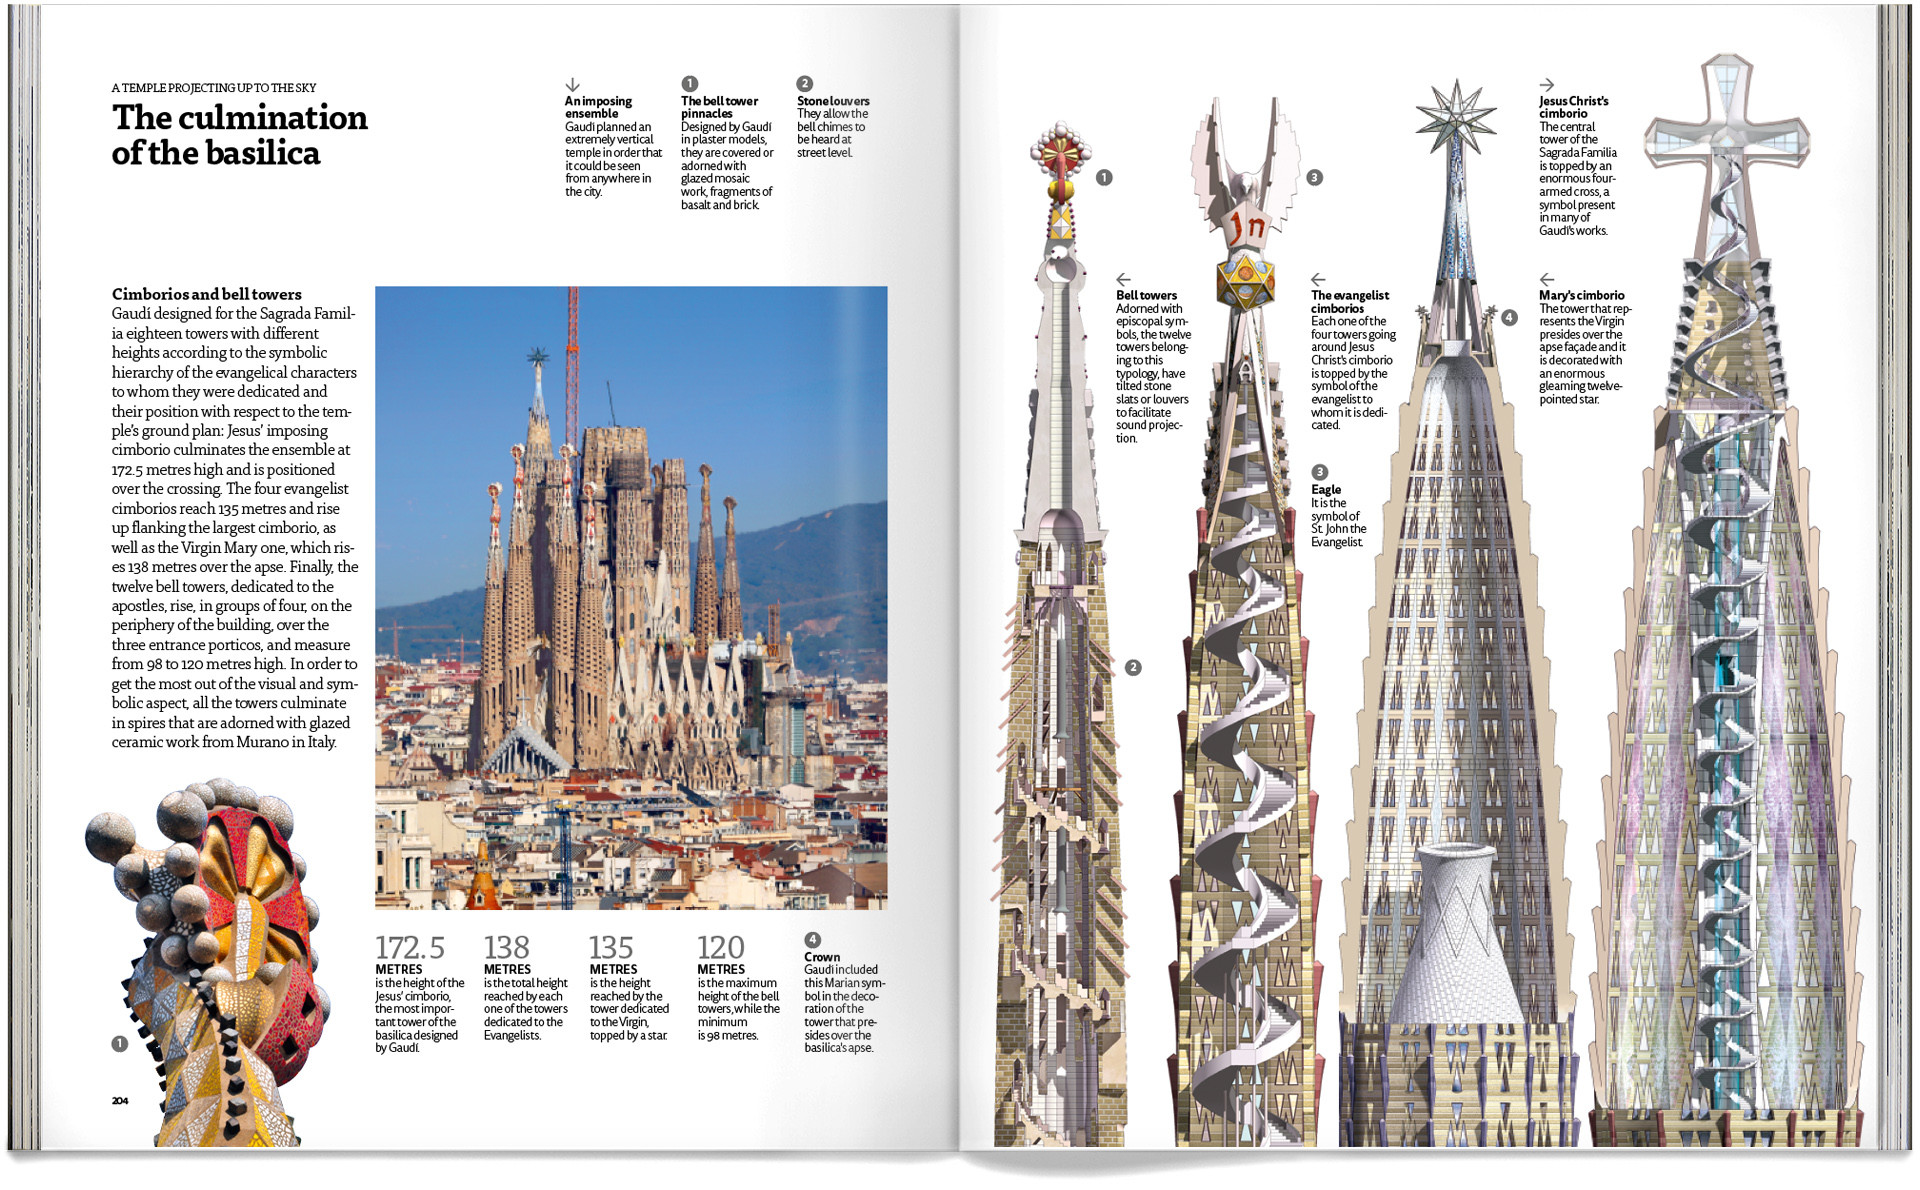 Sagrada Familia Book, a unique place by Gaudí